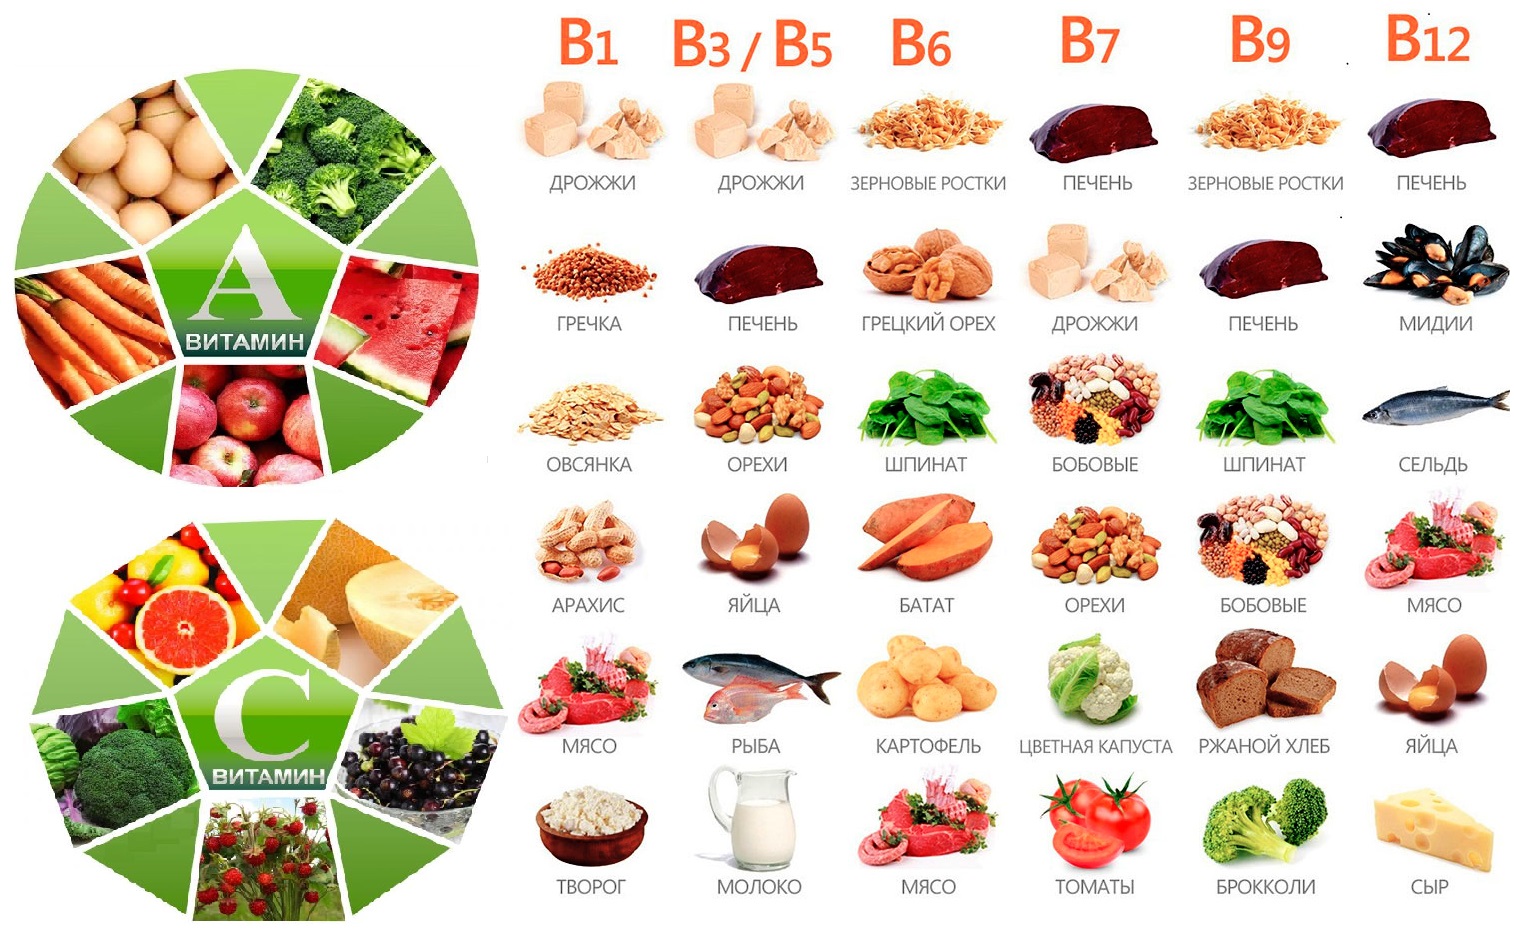 Что входит в витамин б. В каких продуктах содержится витамины группы b. Продукты содержащие витамин b. Витамин b в каких продуктах содержится больше. Продукты с витамином б.